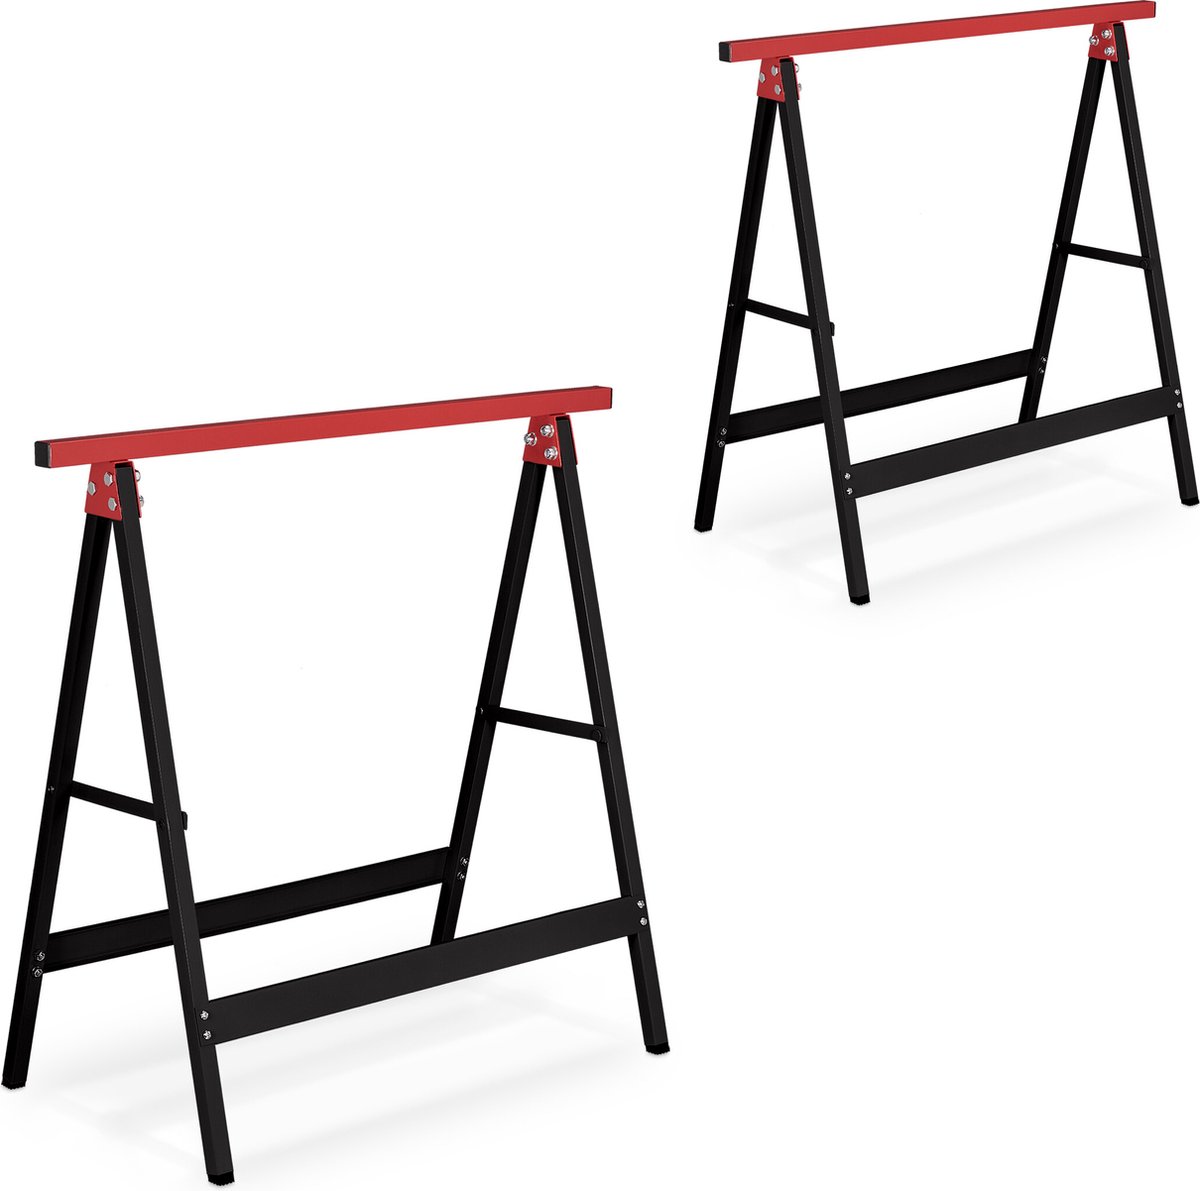 Relaxdays schraag - set van 2 - inklapbaar - zwart/rood -100 kg - werkbok staal - behangen - Relaxdays